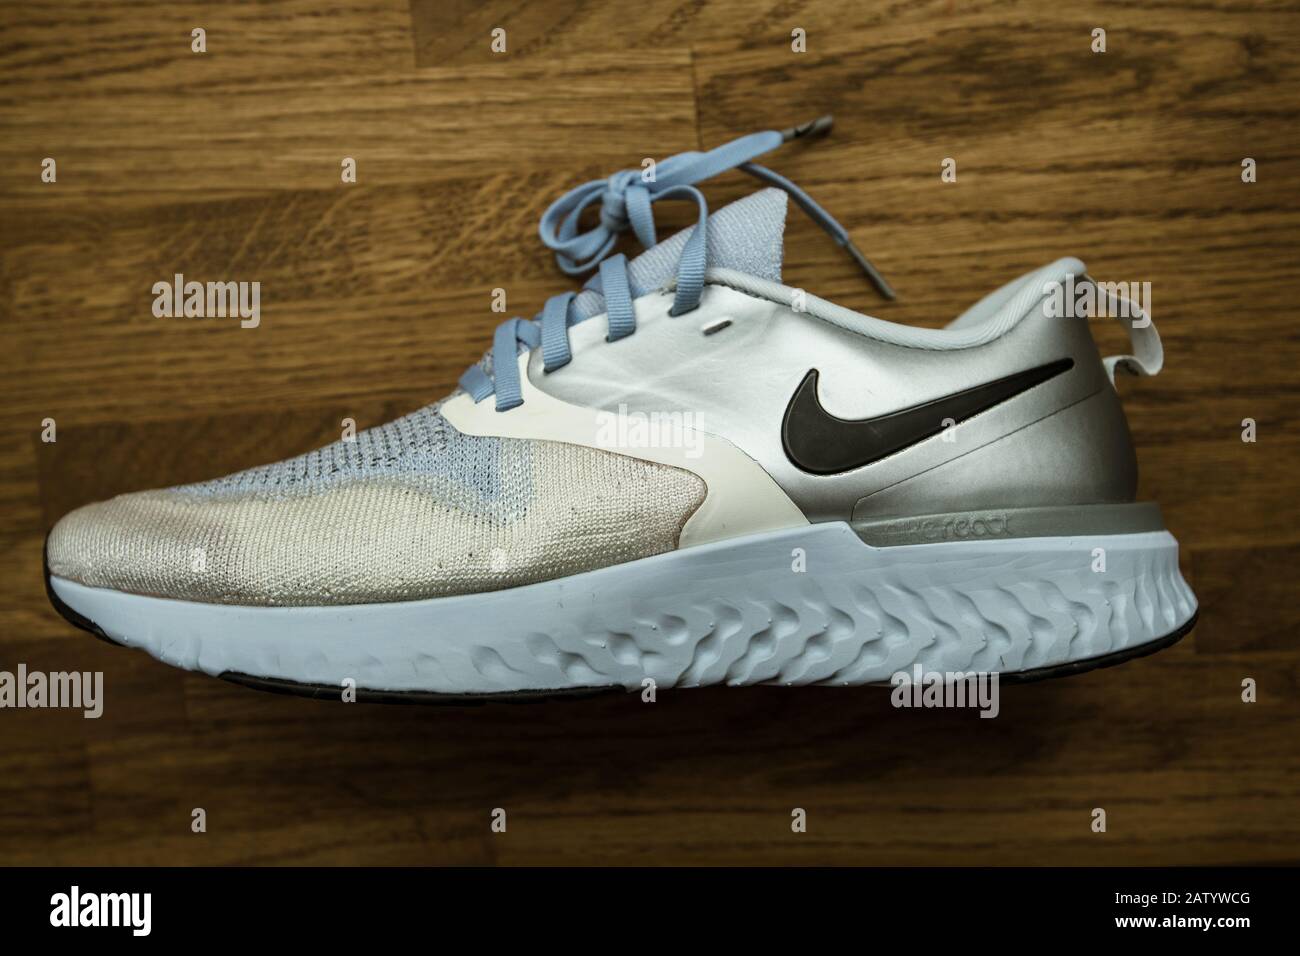 Paris, France - 23 septembre 2019 : chaussure de course professionnelle  avec vue sur le dessus fabriquée par Nike Model Odyssey React Flyknit 2  Premium couleur argent et gris Photo Stock - Alamy